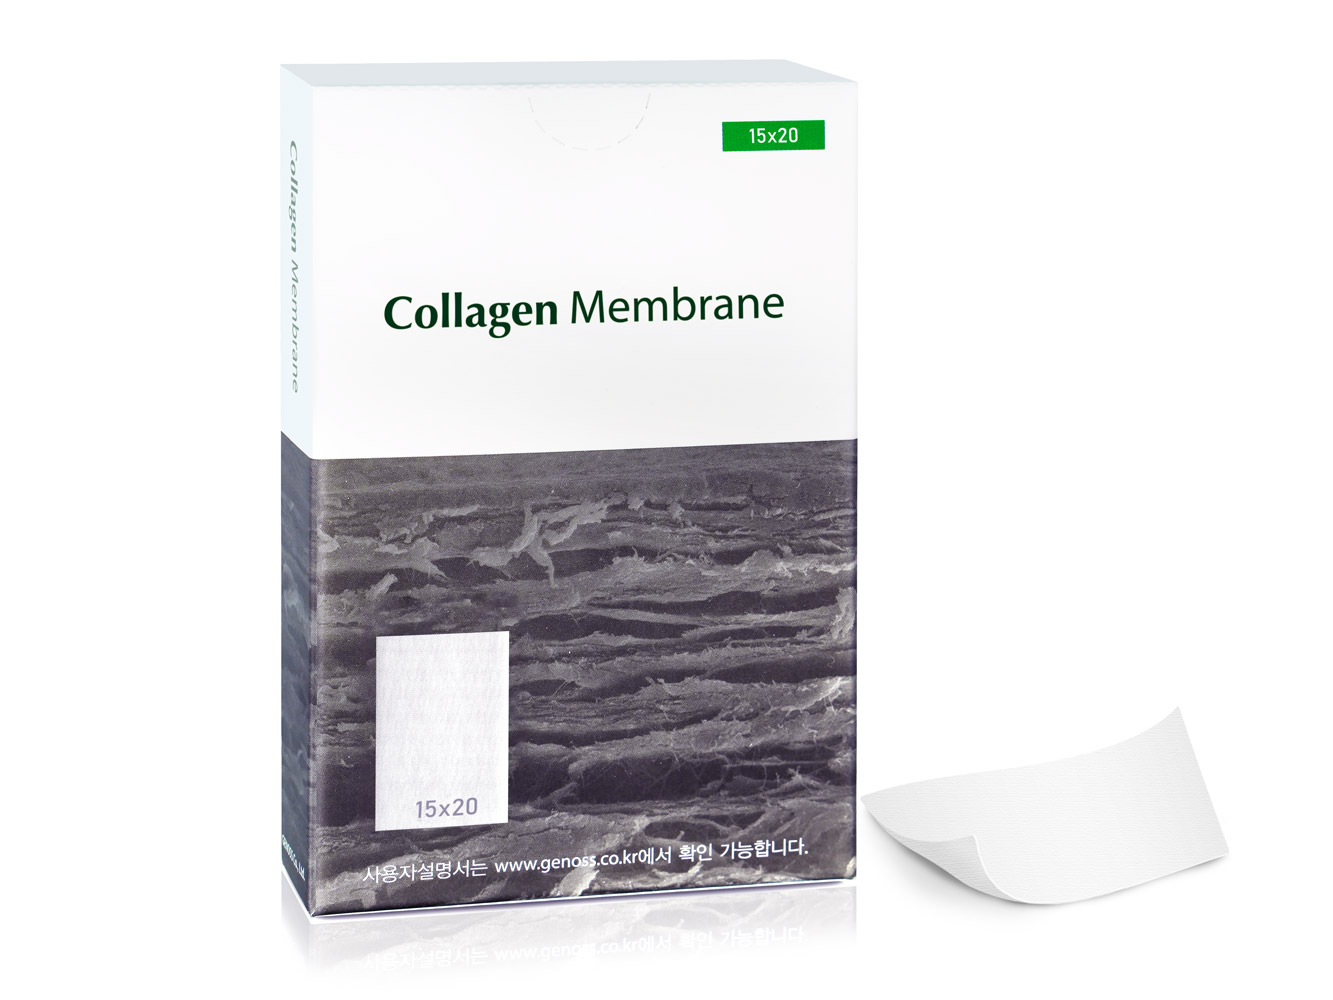 genoss collagen membrane